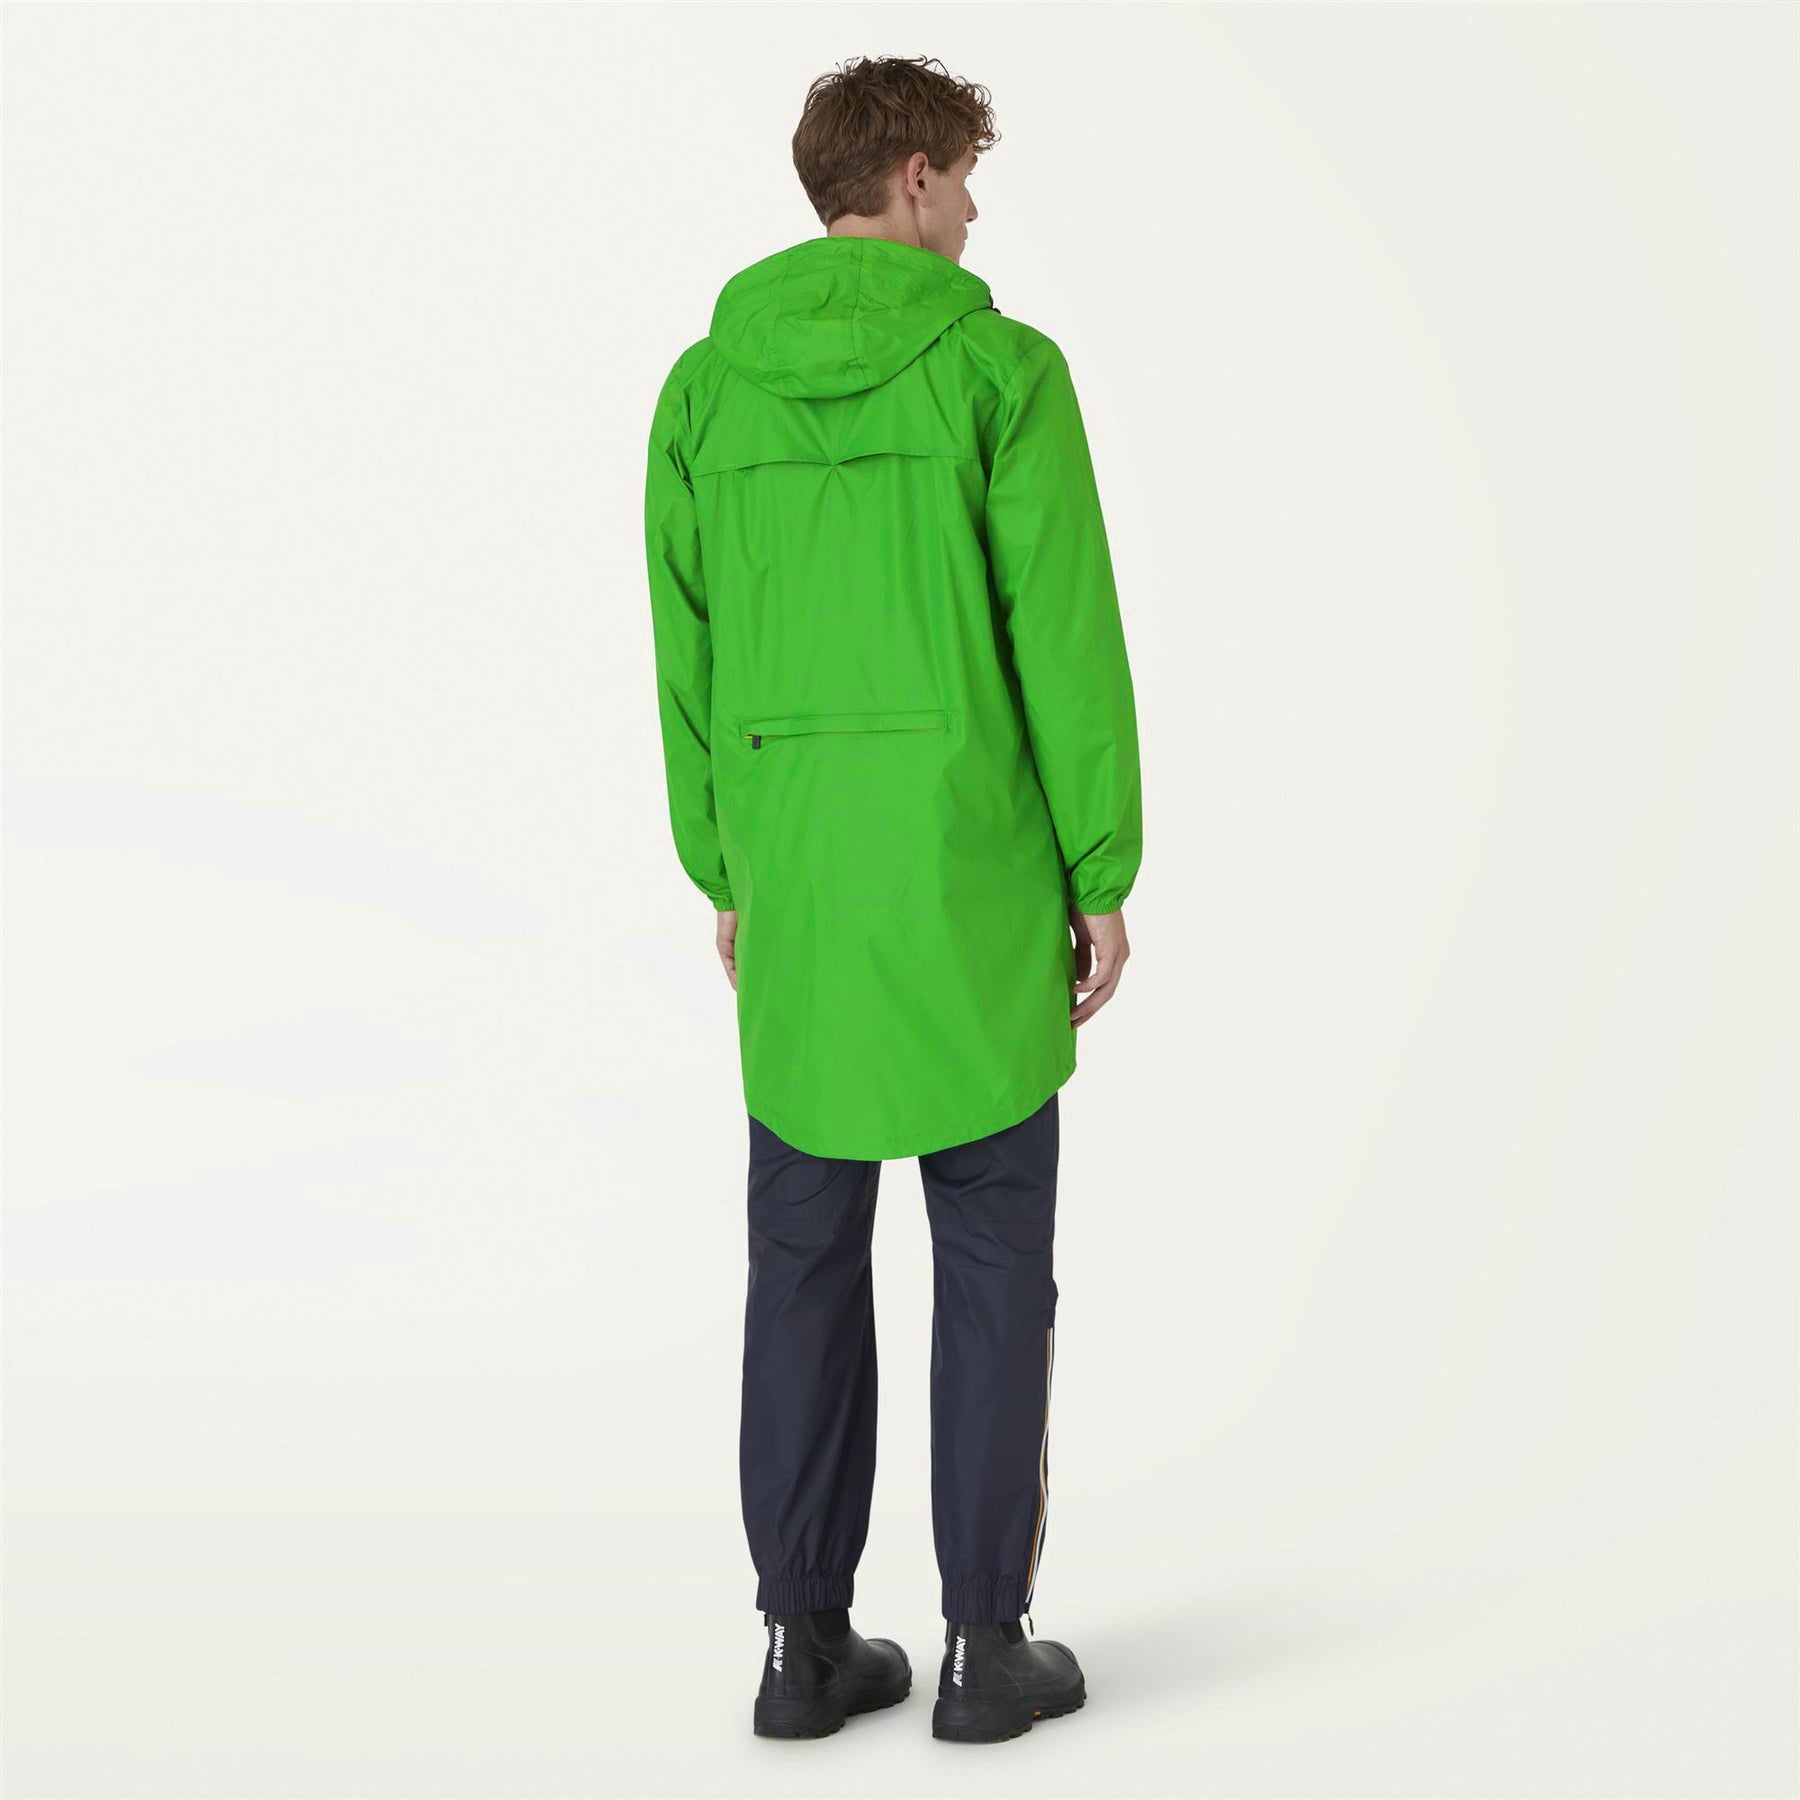 Eiffel - Unisex Waterproof Packable Long Rain Jacket in Green Fluo